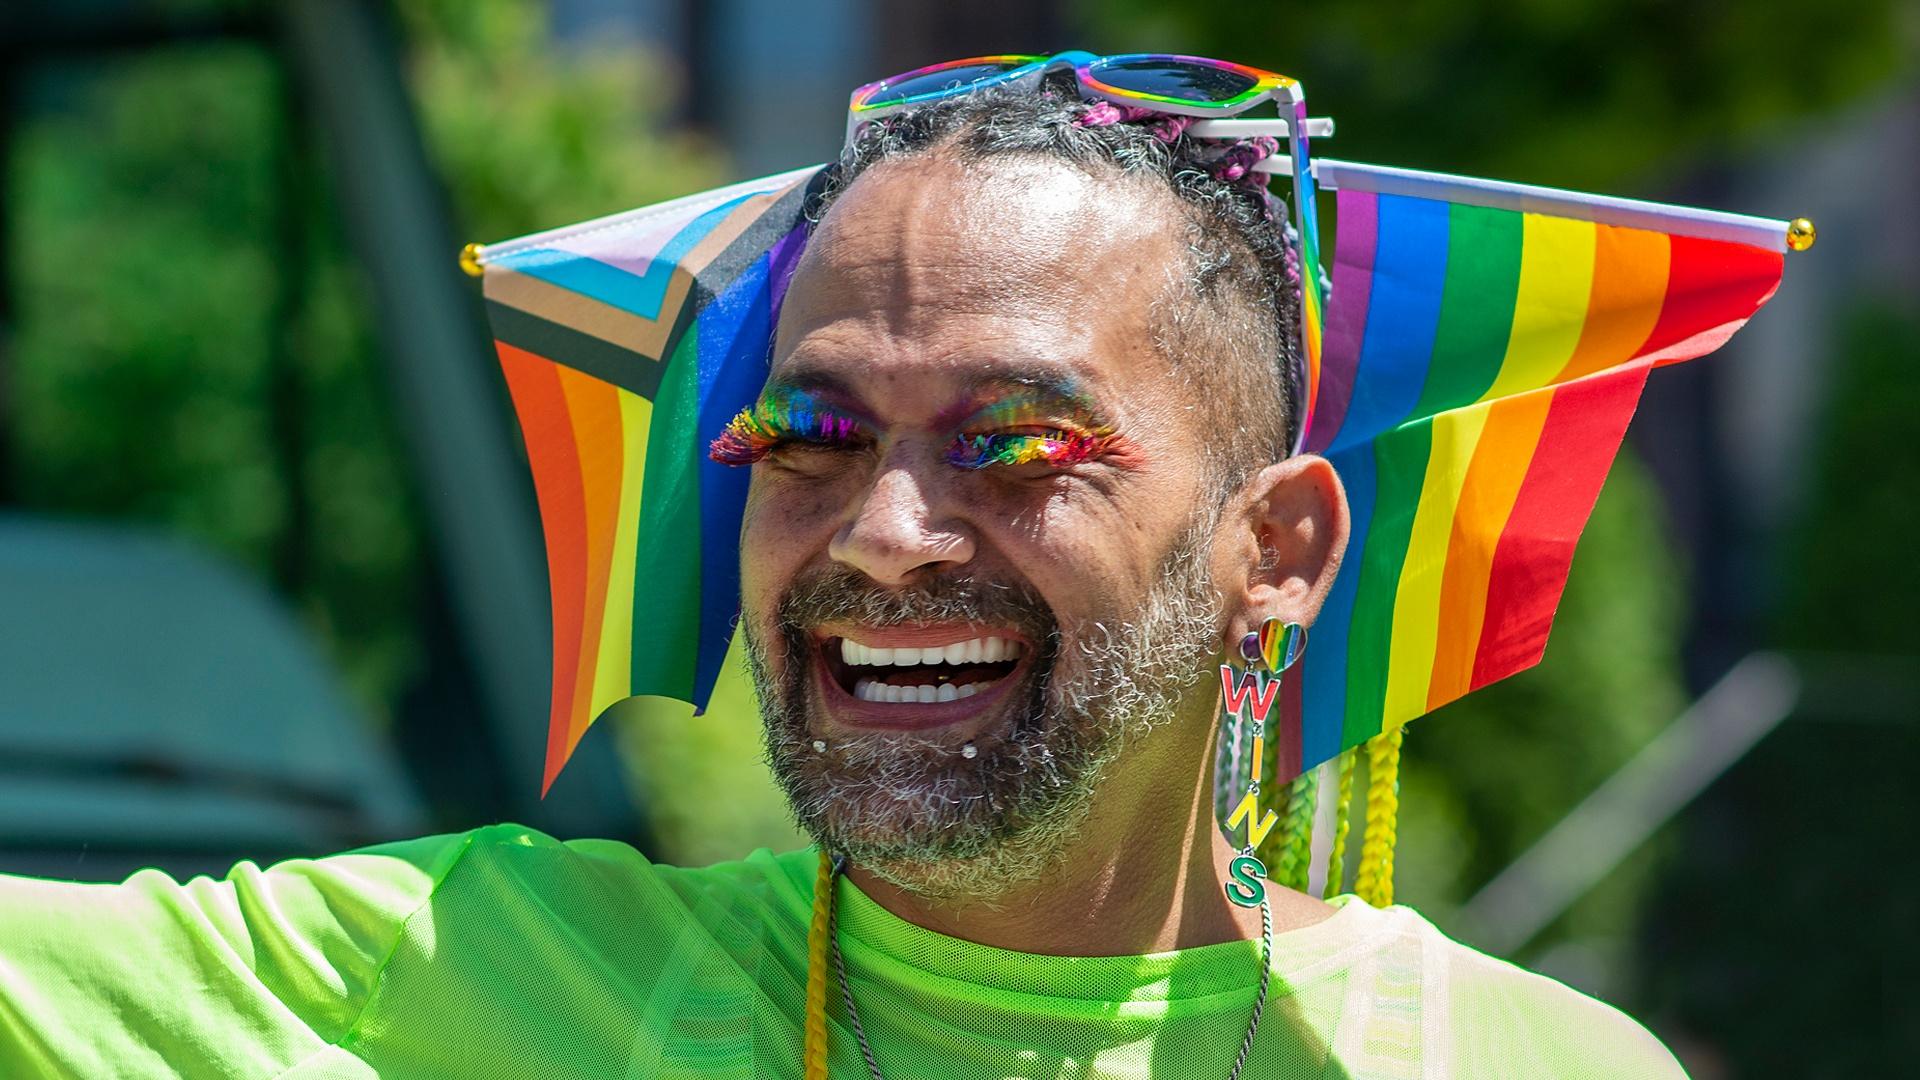 man with rainbow eyelashes smiles 